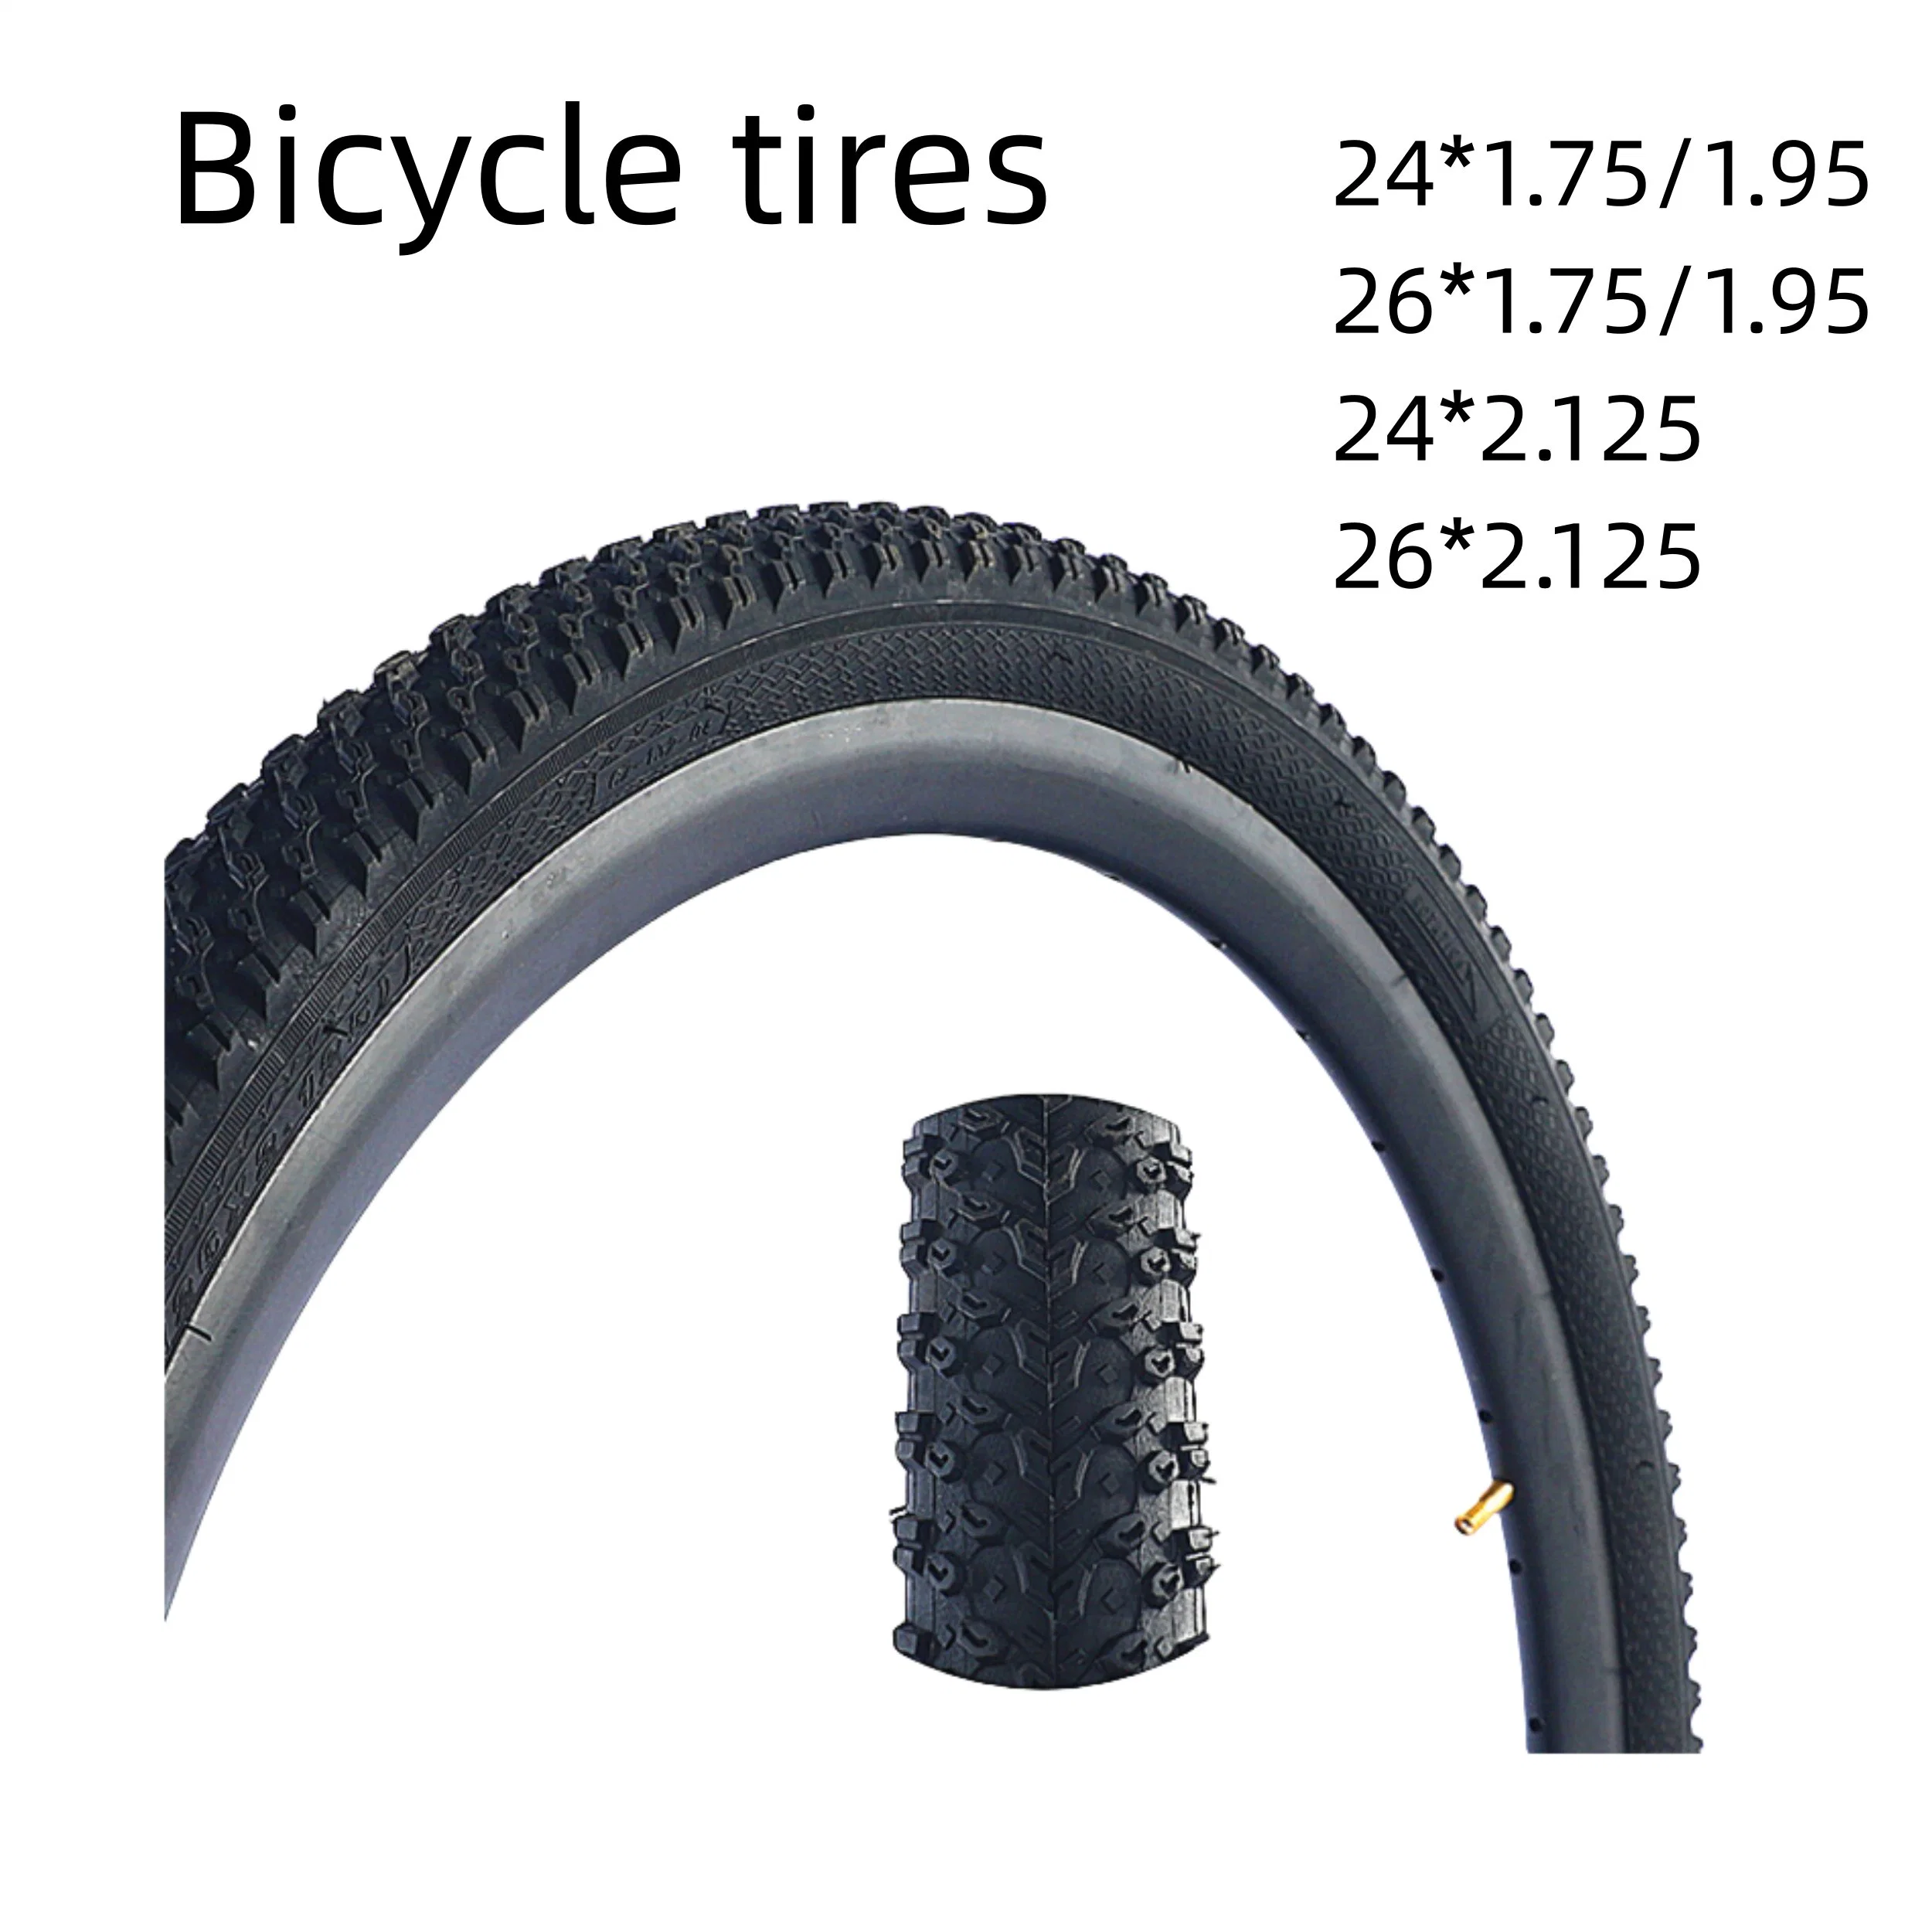 Comercio al por mayor de los neumáticos de bicicletas de alta calidad de diversos modelos